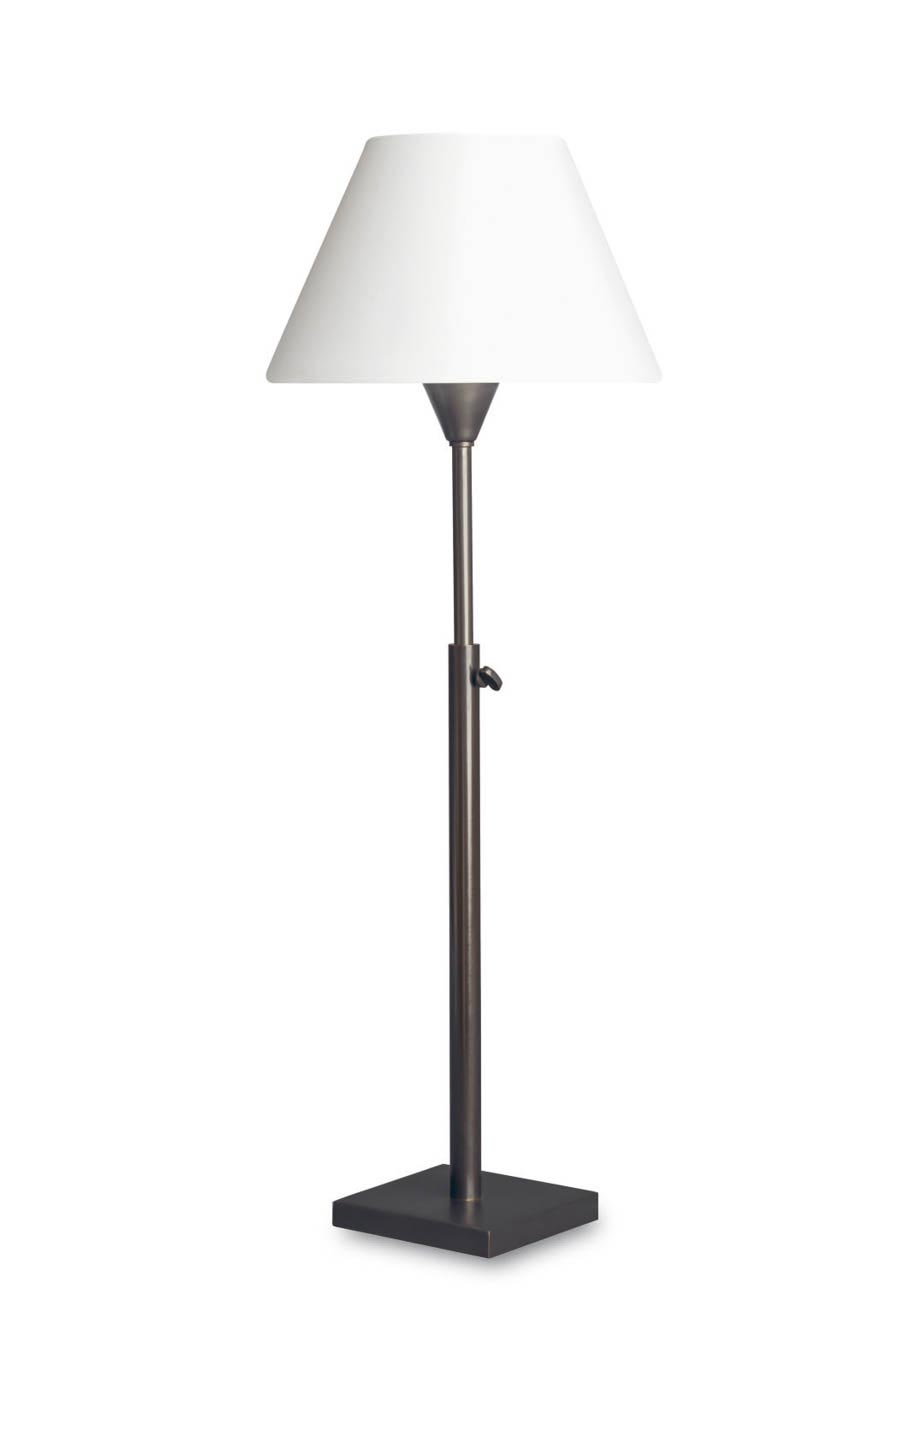 Lampe de table abat-jour blanc, pied télécospique bronze patiné L08. Casadisagne. 